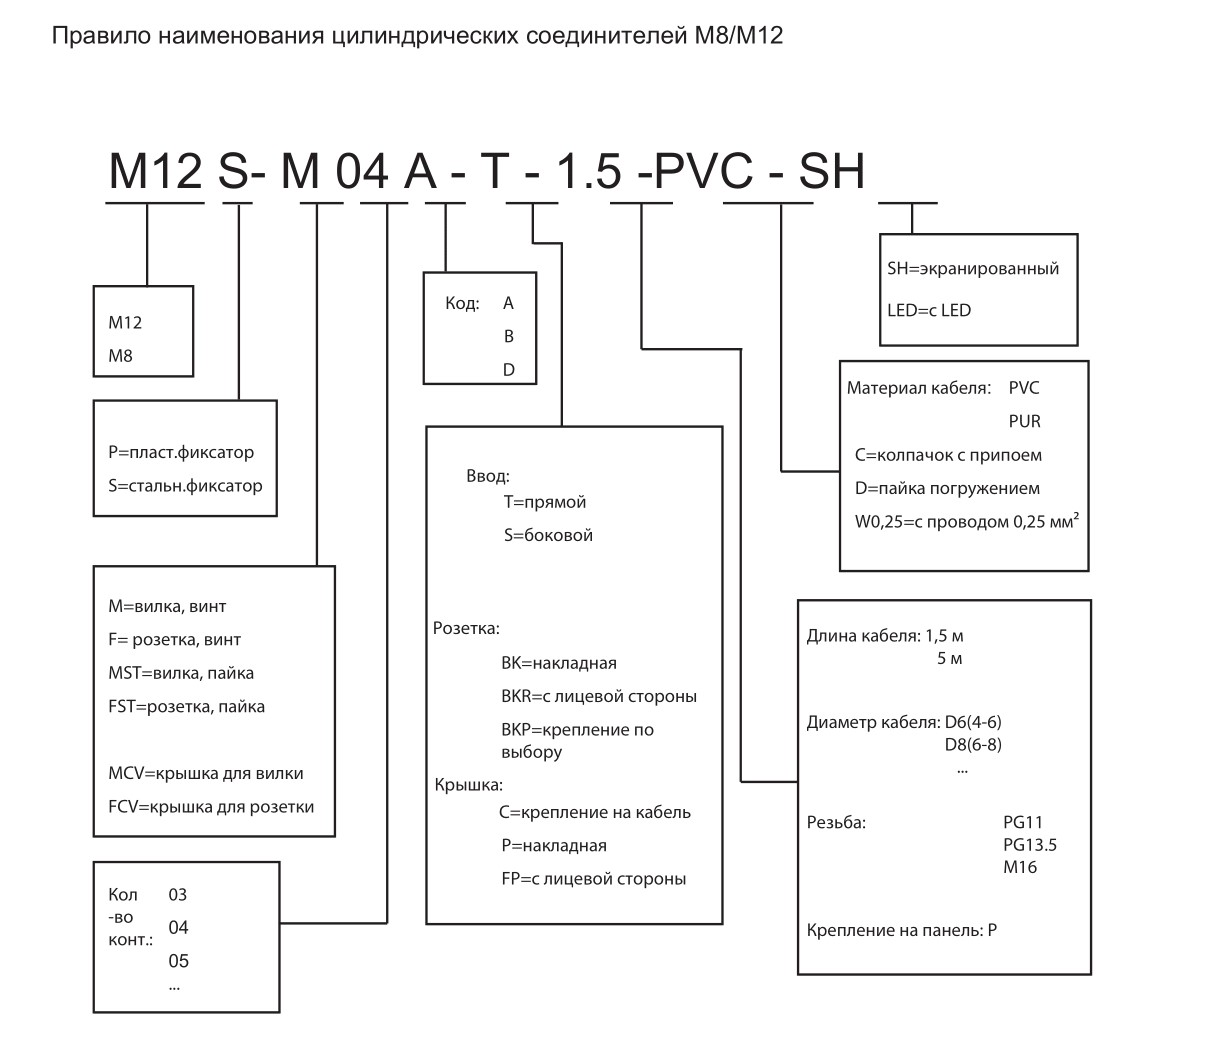 Цилиндрический соединитель-вилка с кабелем M12-M04D-T-1.5-PUR-Cat.5e 1632044014091: Структура обозначения